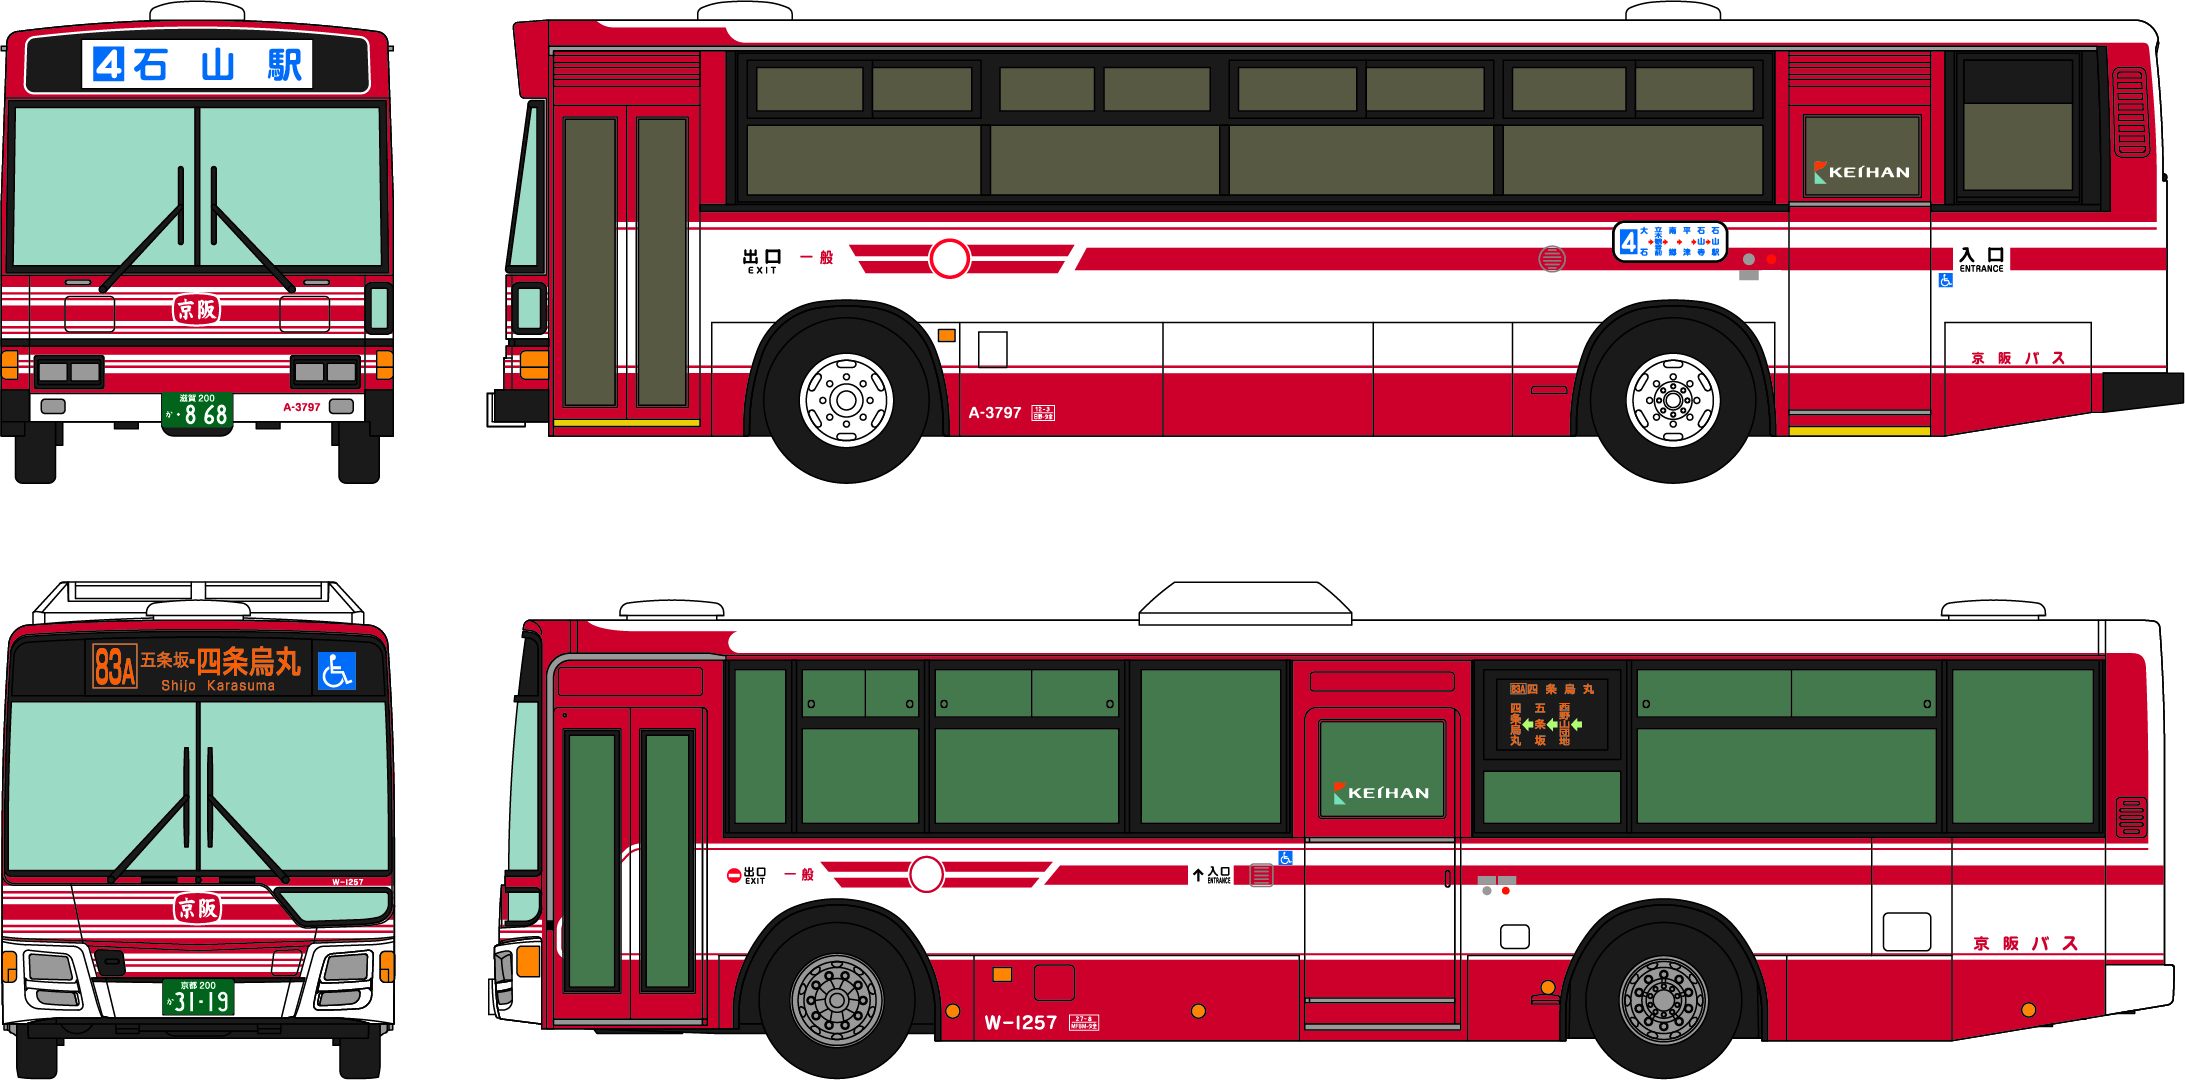 トミーテック 324713 ザ・バスコレクション 京阪バス100周年記念路線車2台セット Nゲージ 鉄道模型 通販 ホビーショップタムタム